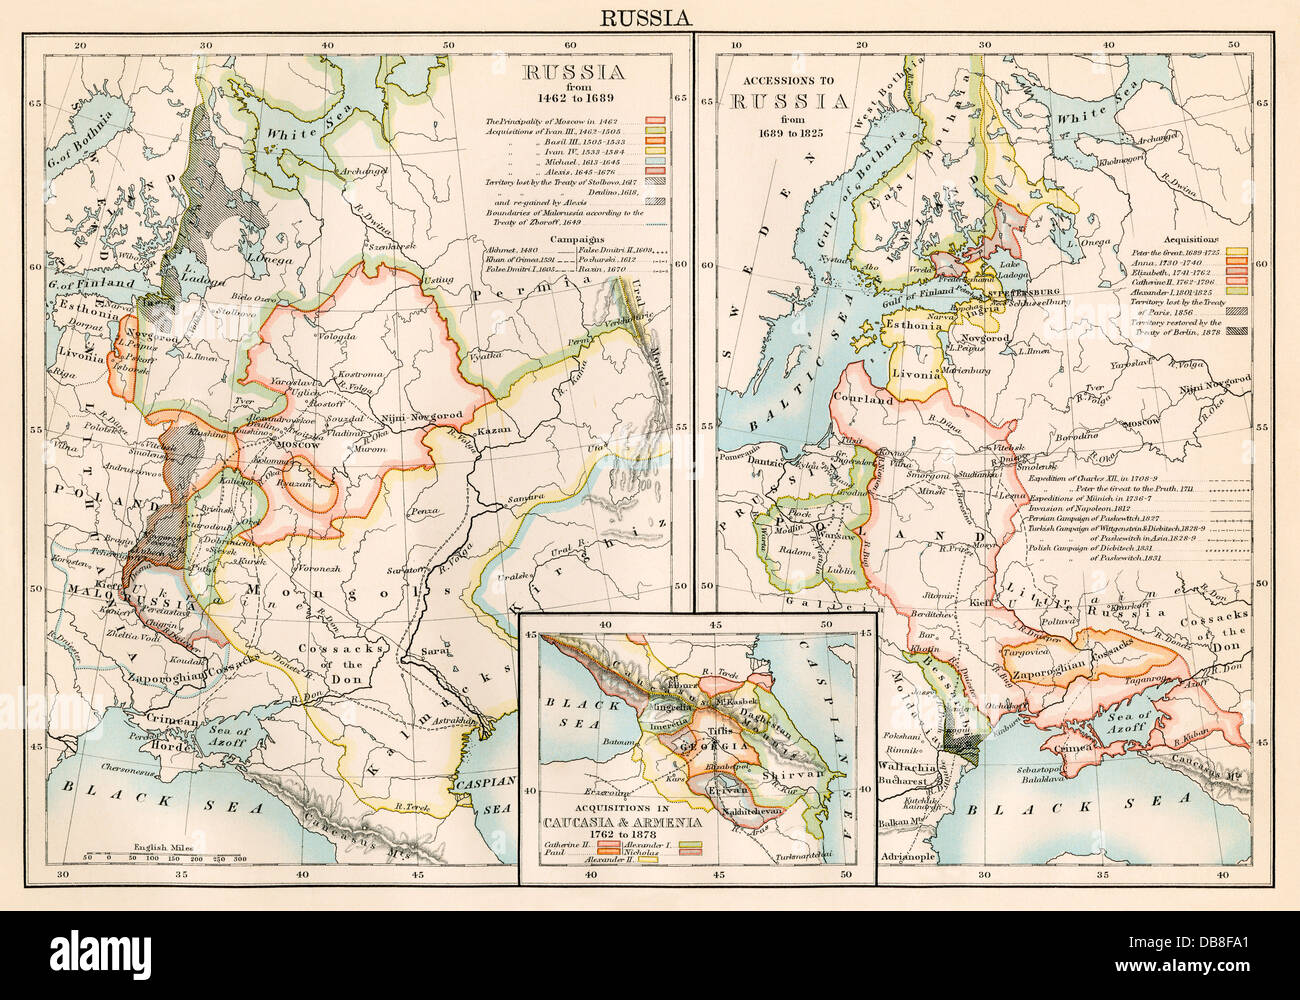 La Russia 1462-1689 (sinistra); terre aggiunto all Impero Russo 1689-1825 (a destra), maggiorato di Armenia e Caucasia (inserto). Litografia a colori Foto Stock